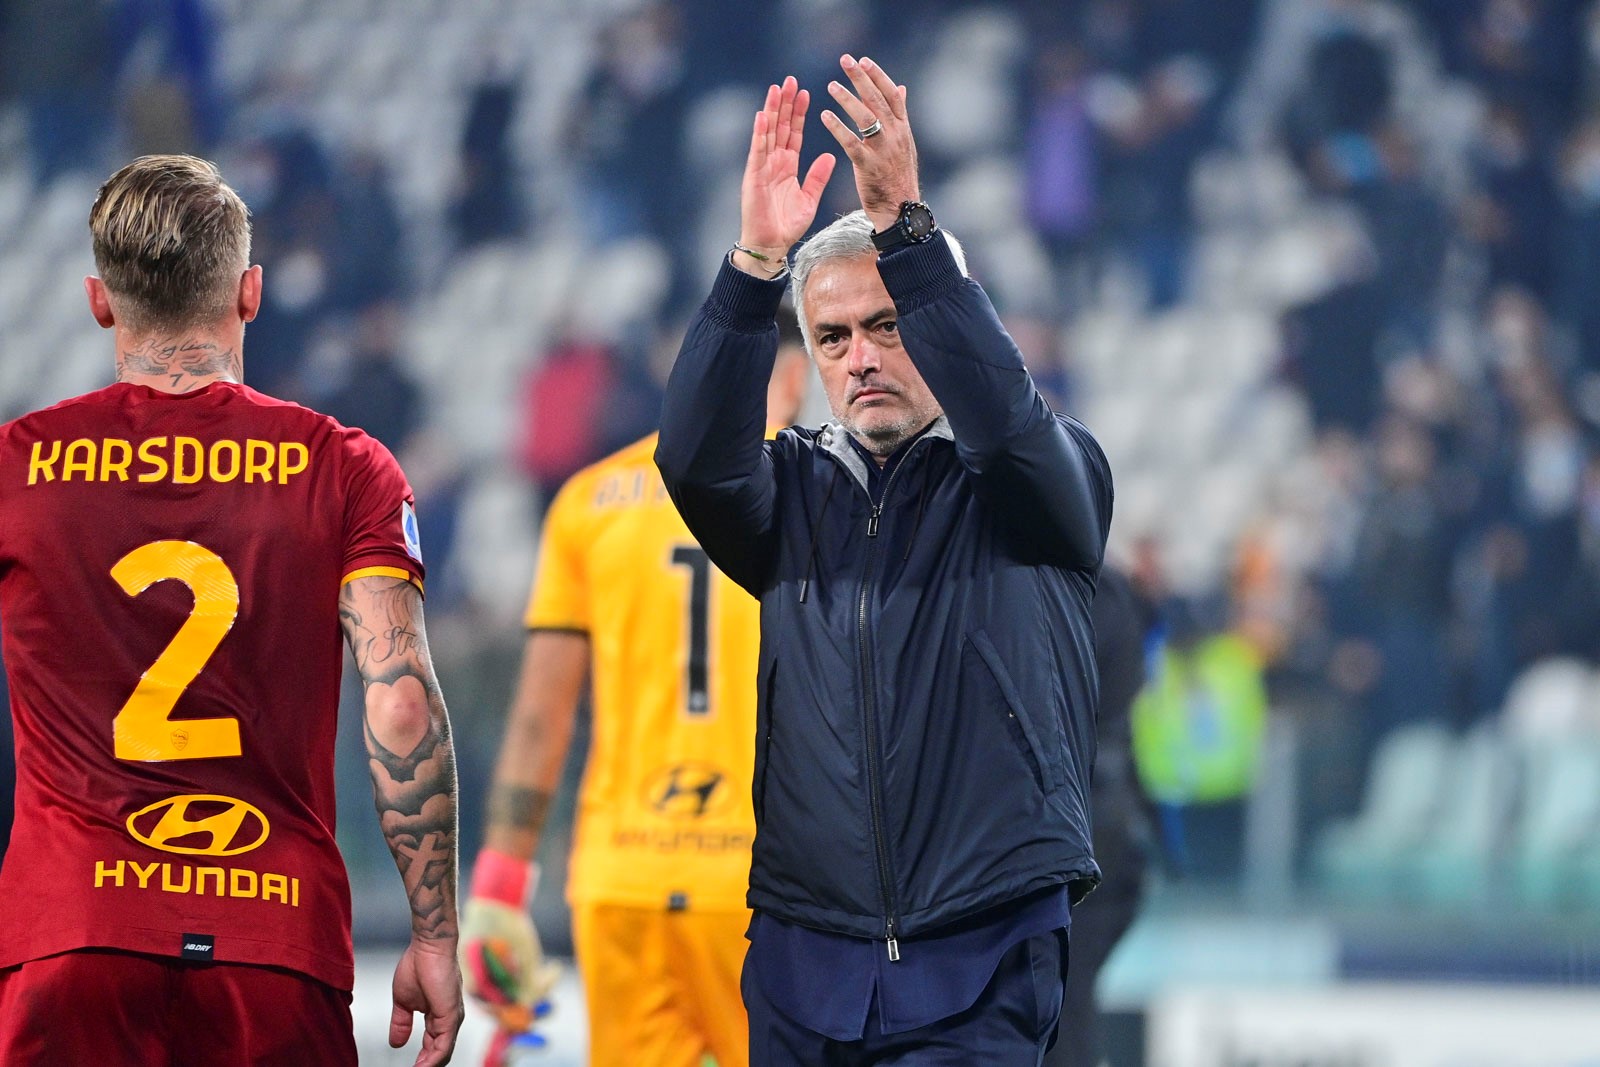 AS Roma kalah, Mourinho 'salam tiga jari' untuk fans Juventus